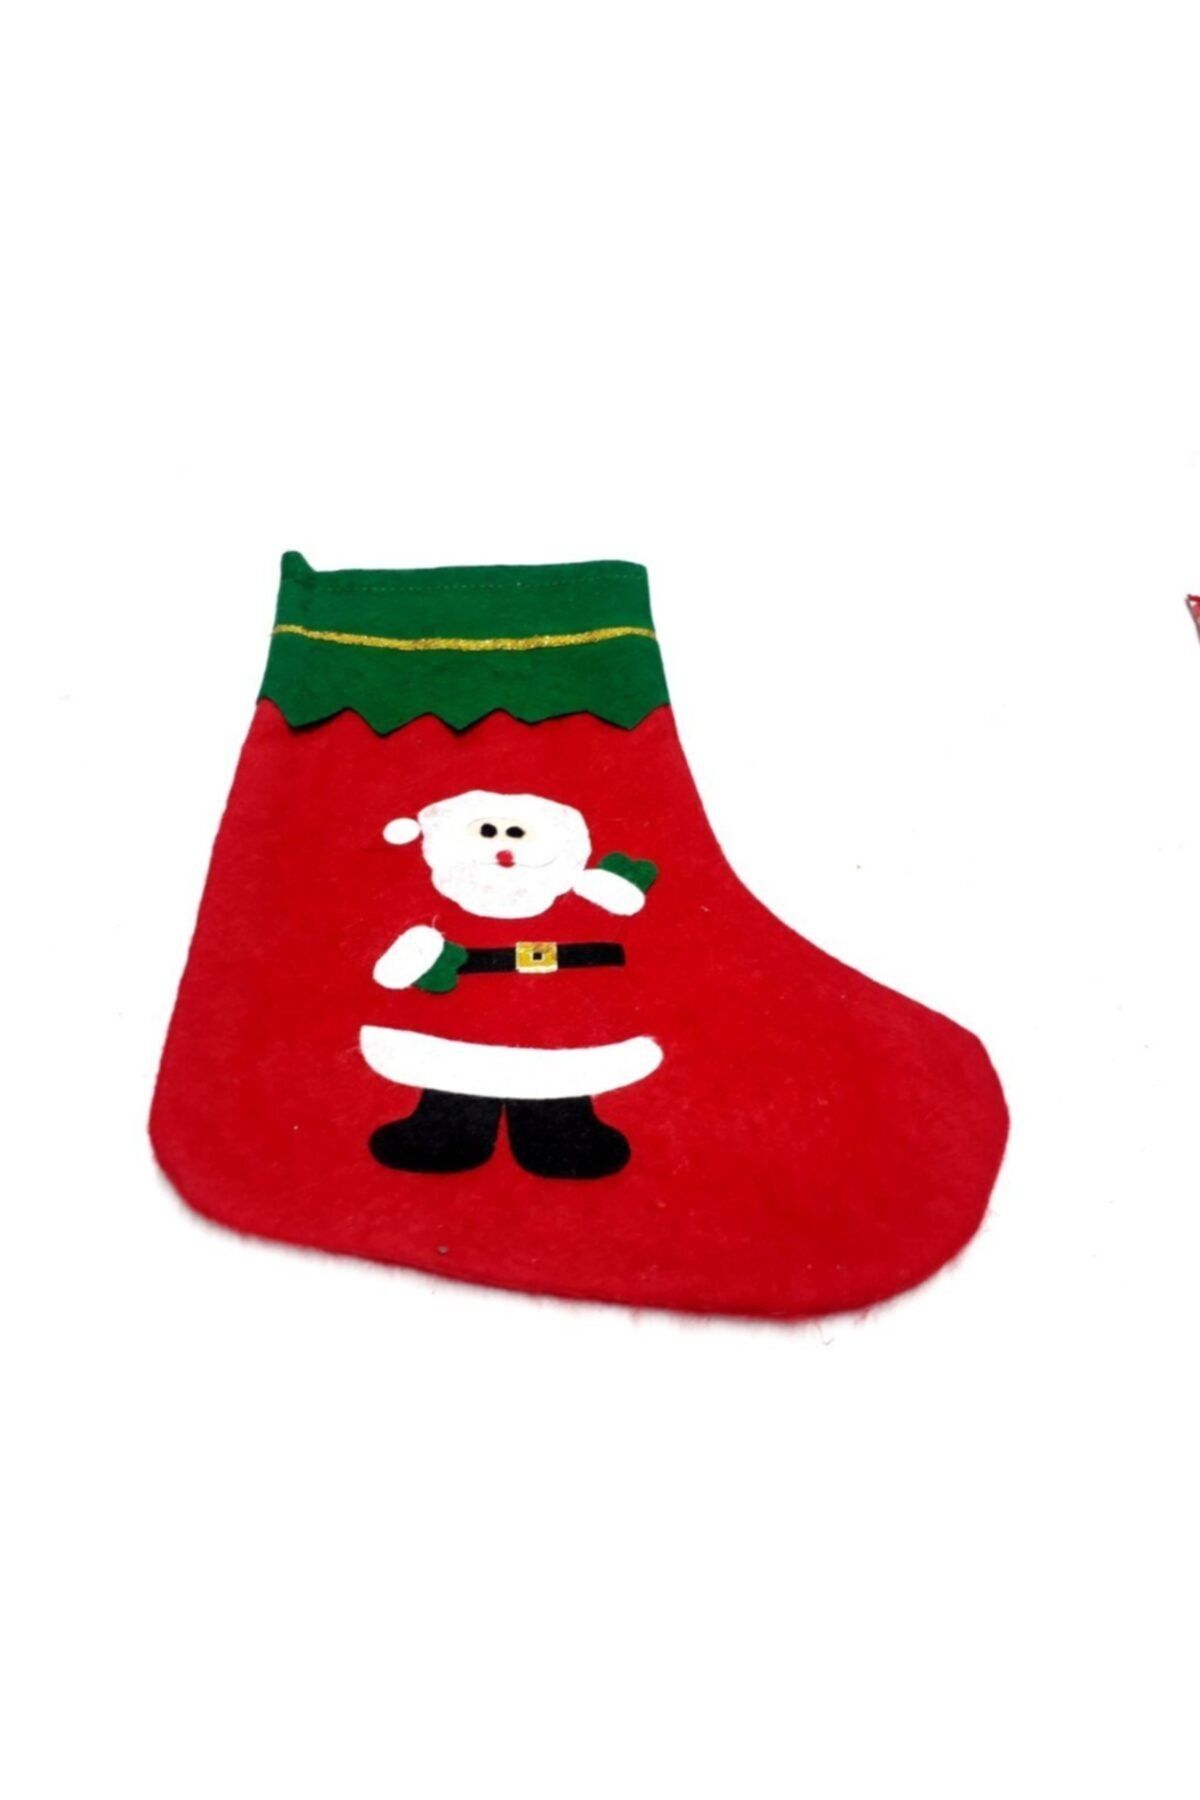 AteşTech Noel Baba Baskılı Elyaf Çorap 17*36 Cm